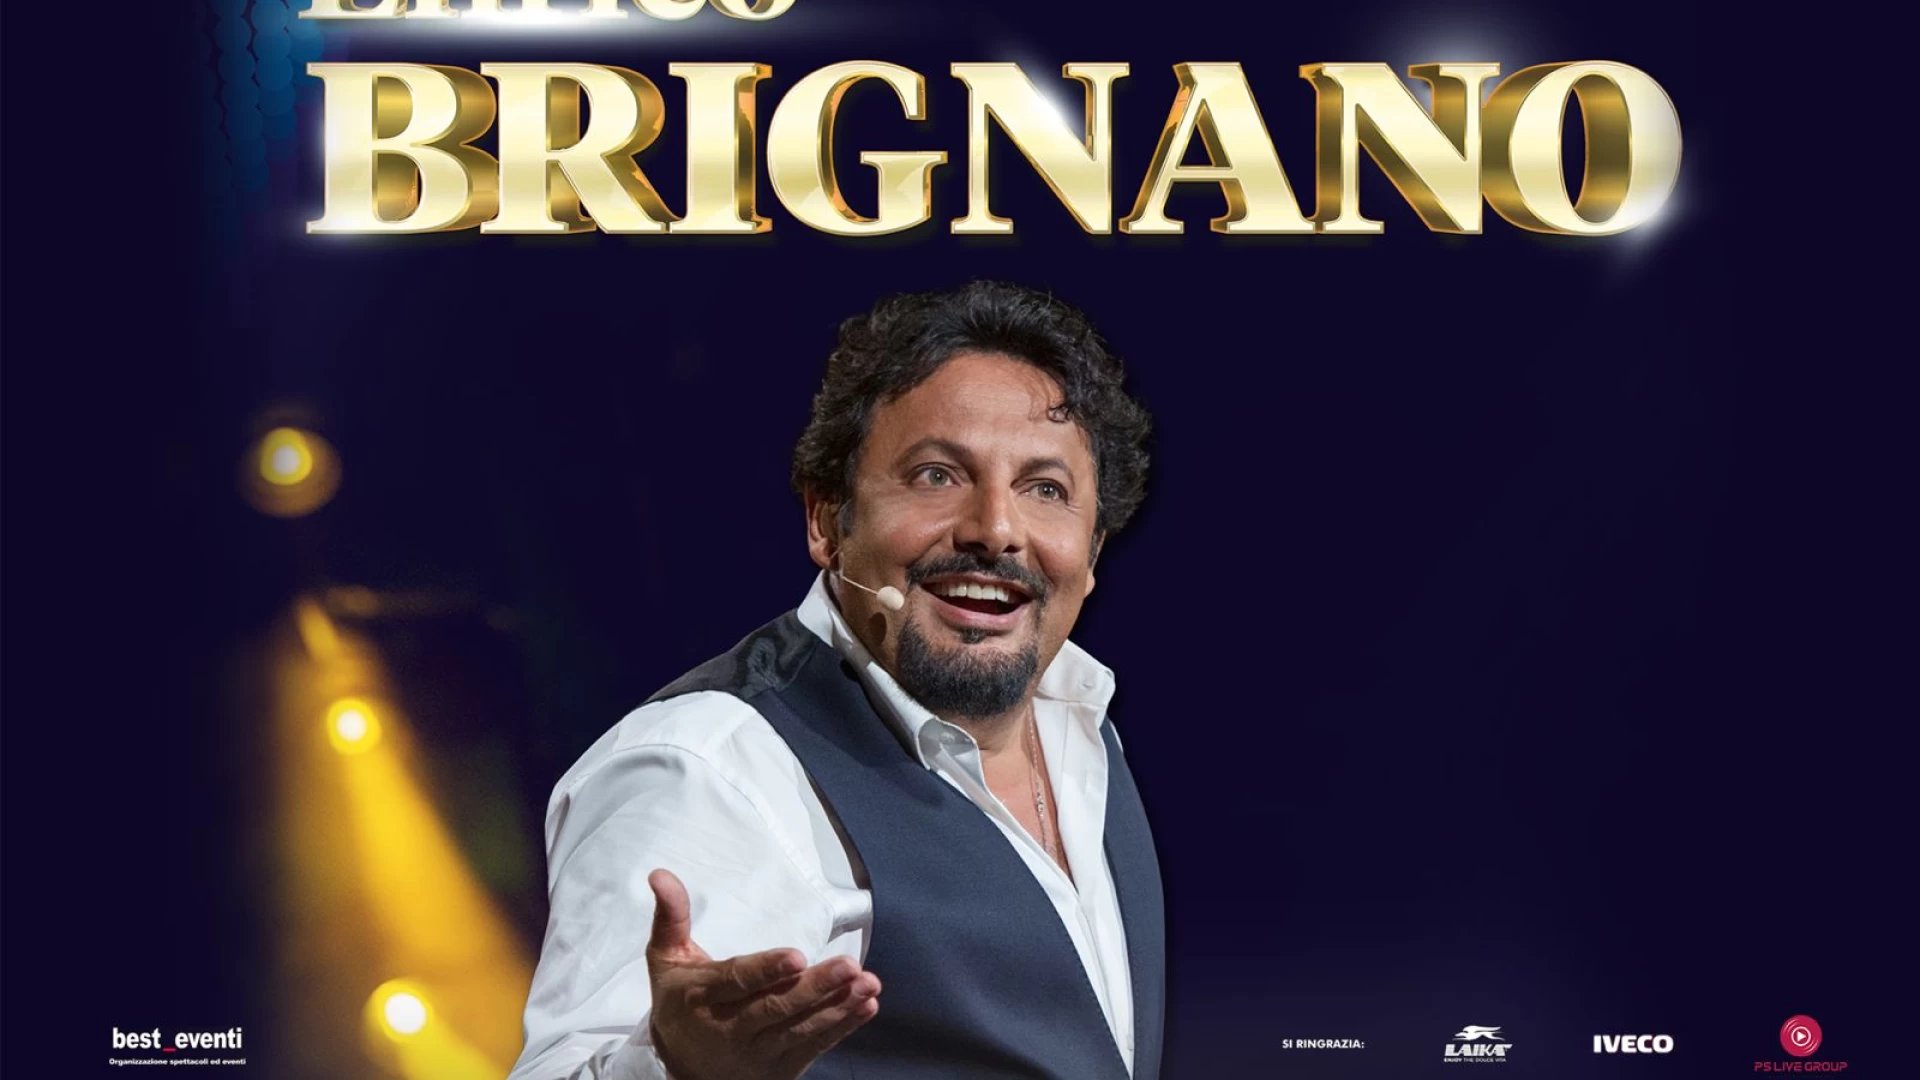 Enrico Brignano all'auditorium di Isernia, biglietti in vendita da oggi per lo spettacolo del 28 novembre.